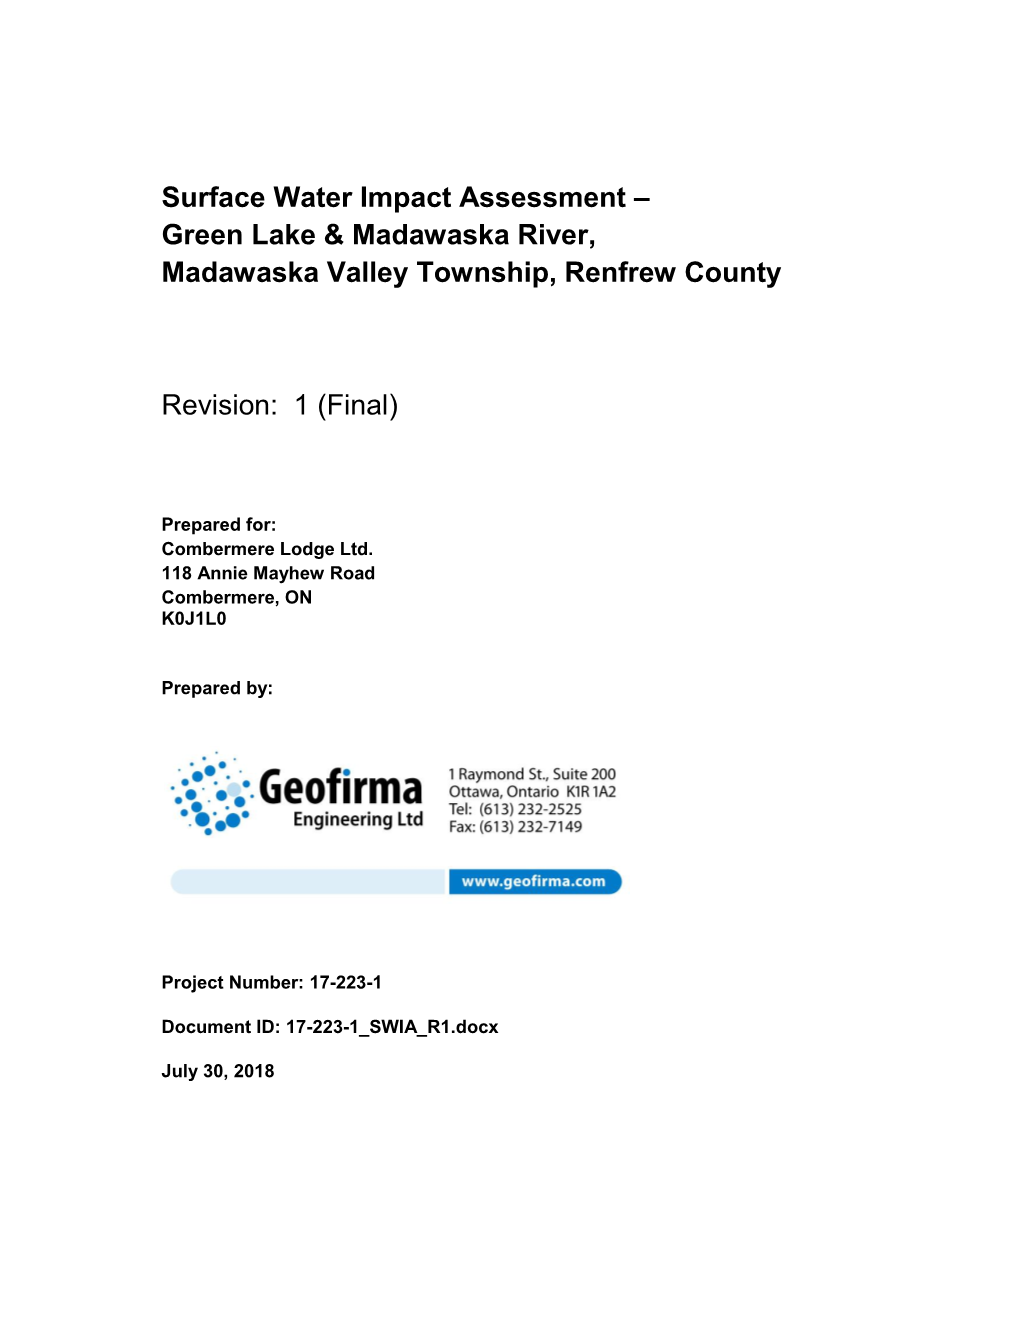 Surface Water Impact Assessment – Green Lake & Madawaska River